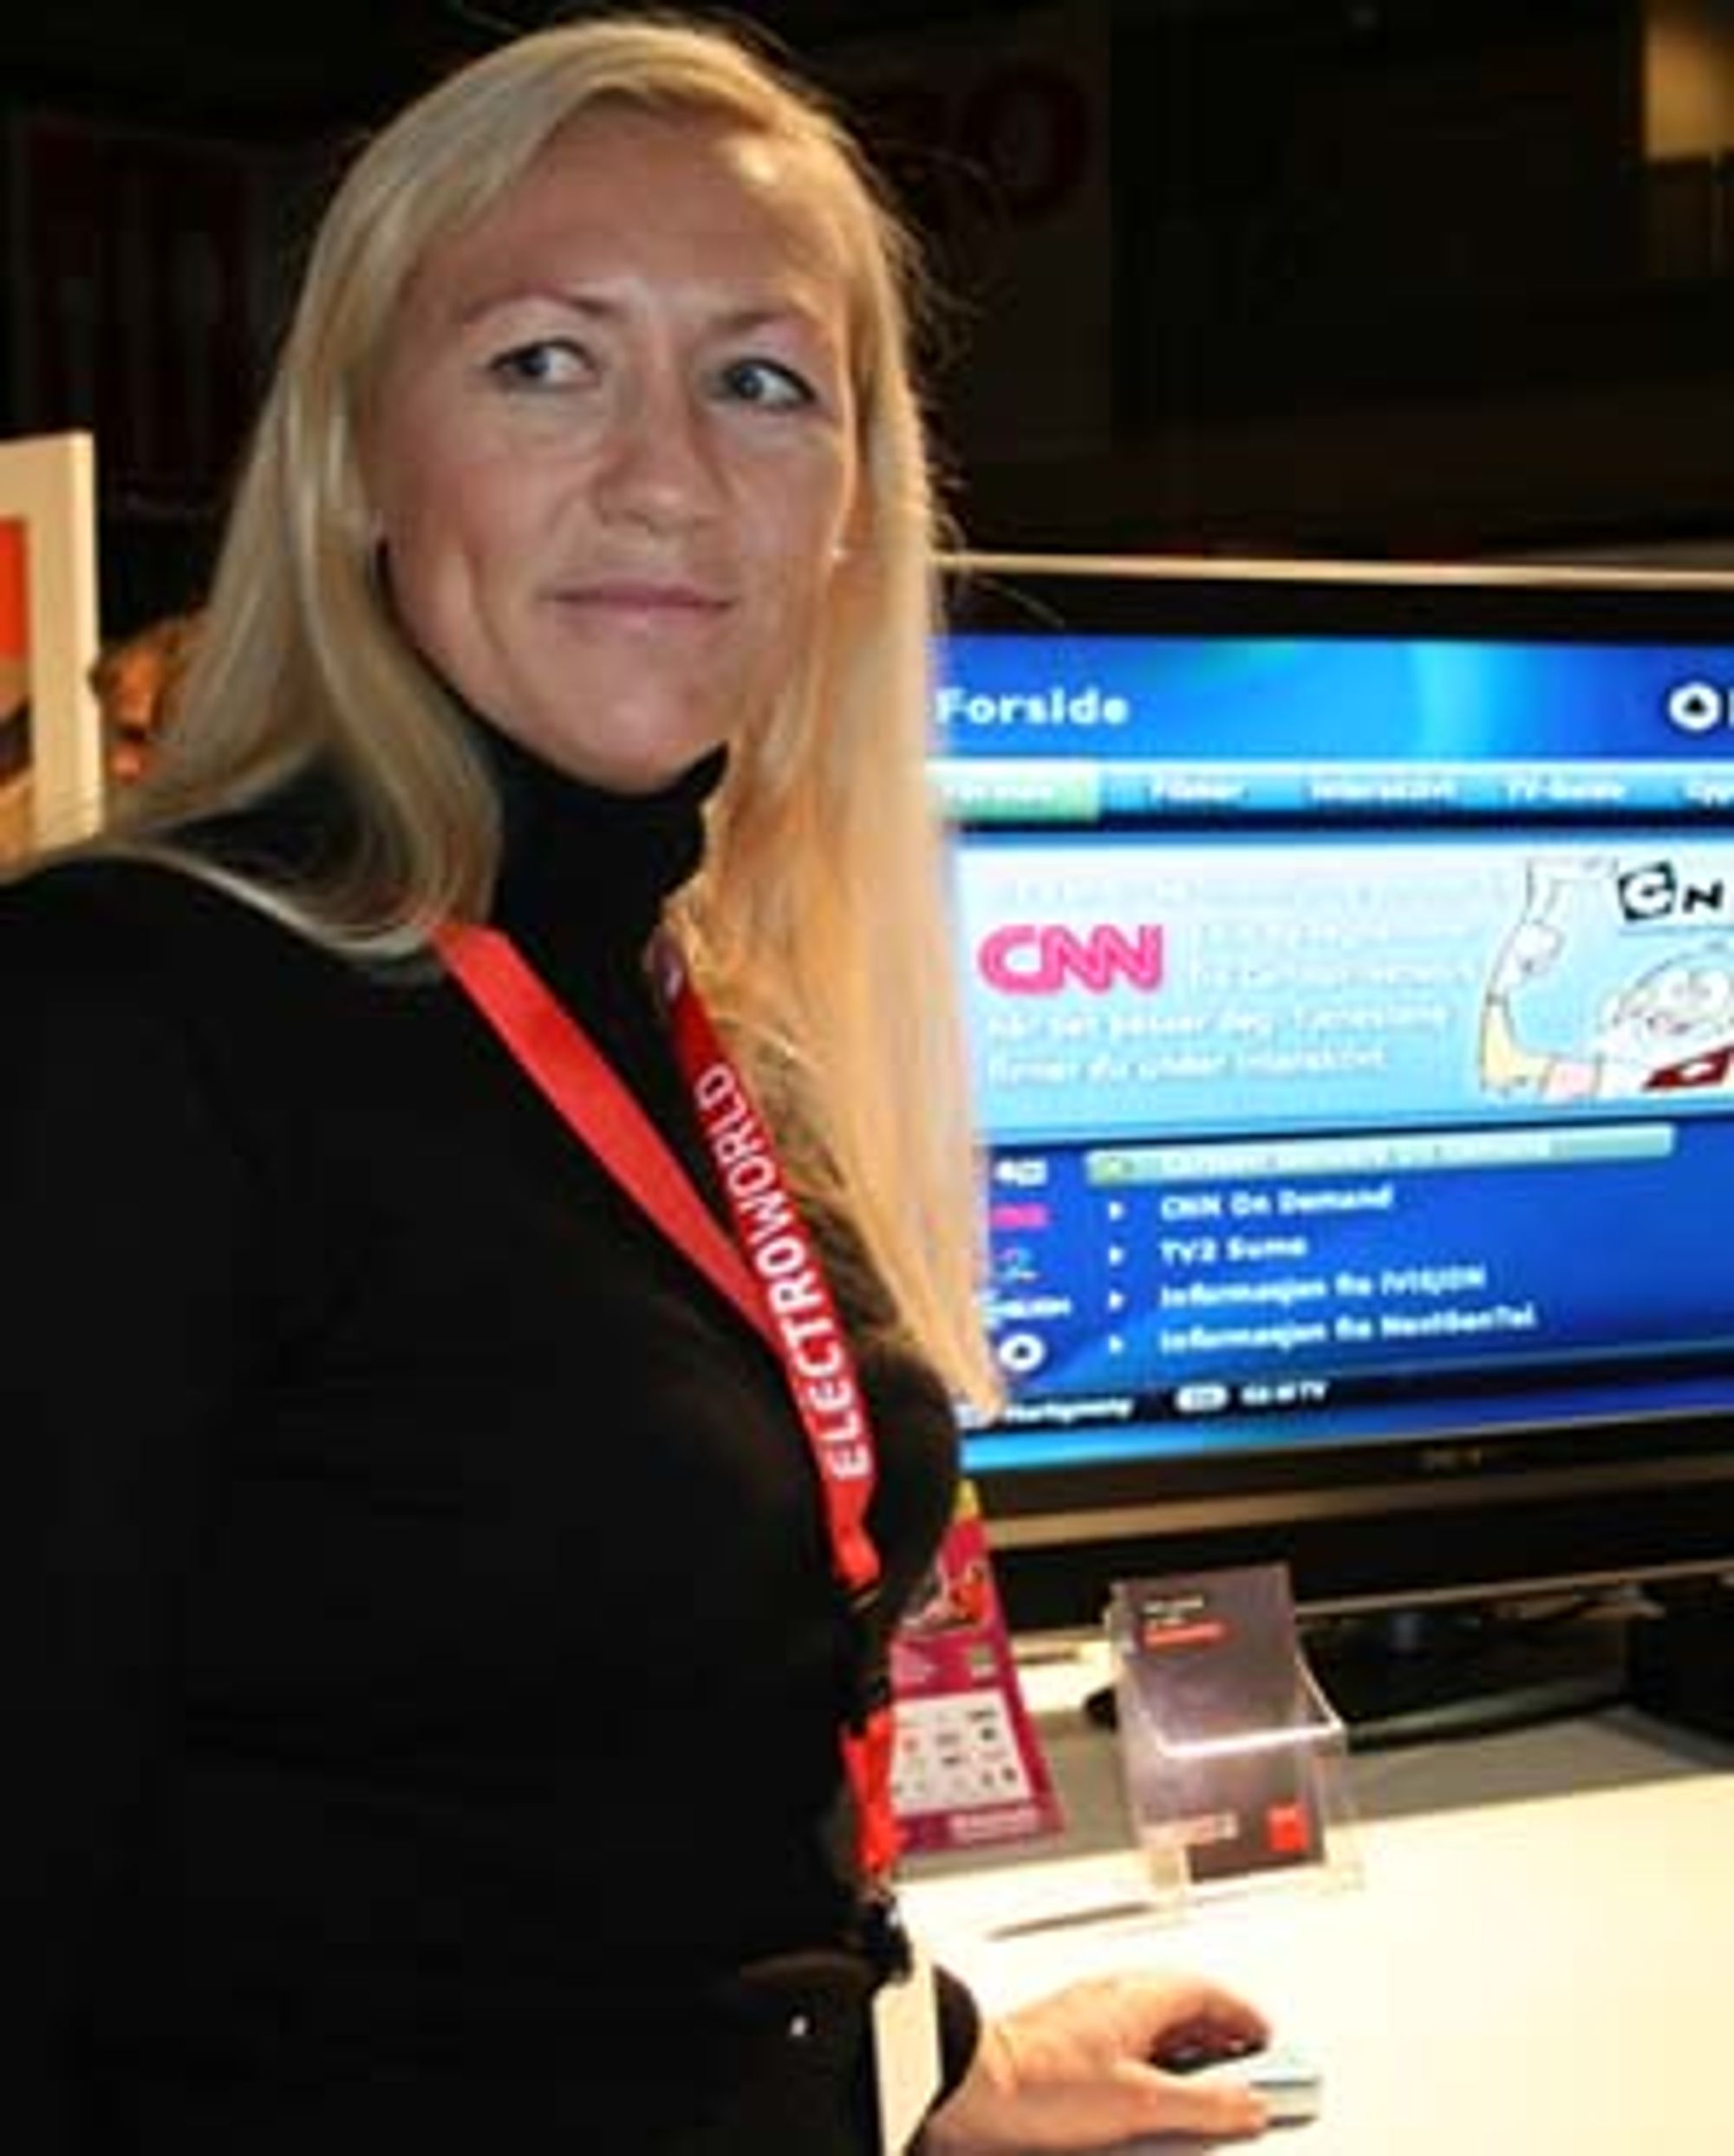 CNN og Cartoon Network på NextTV